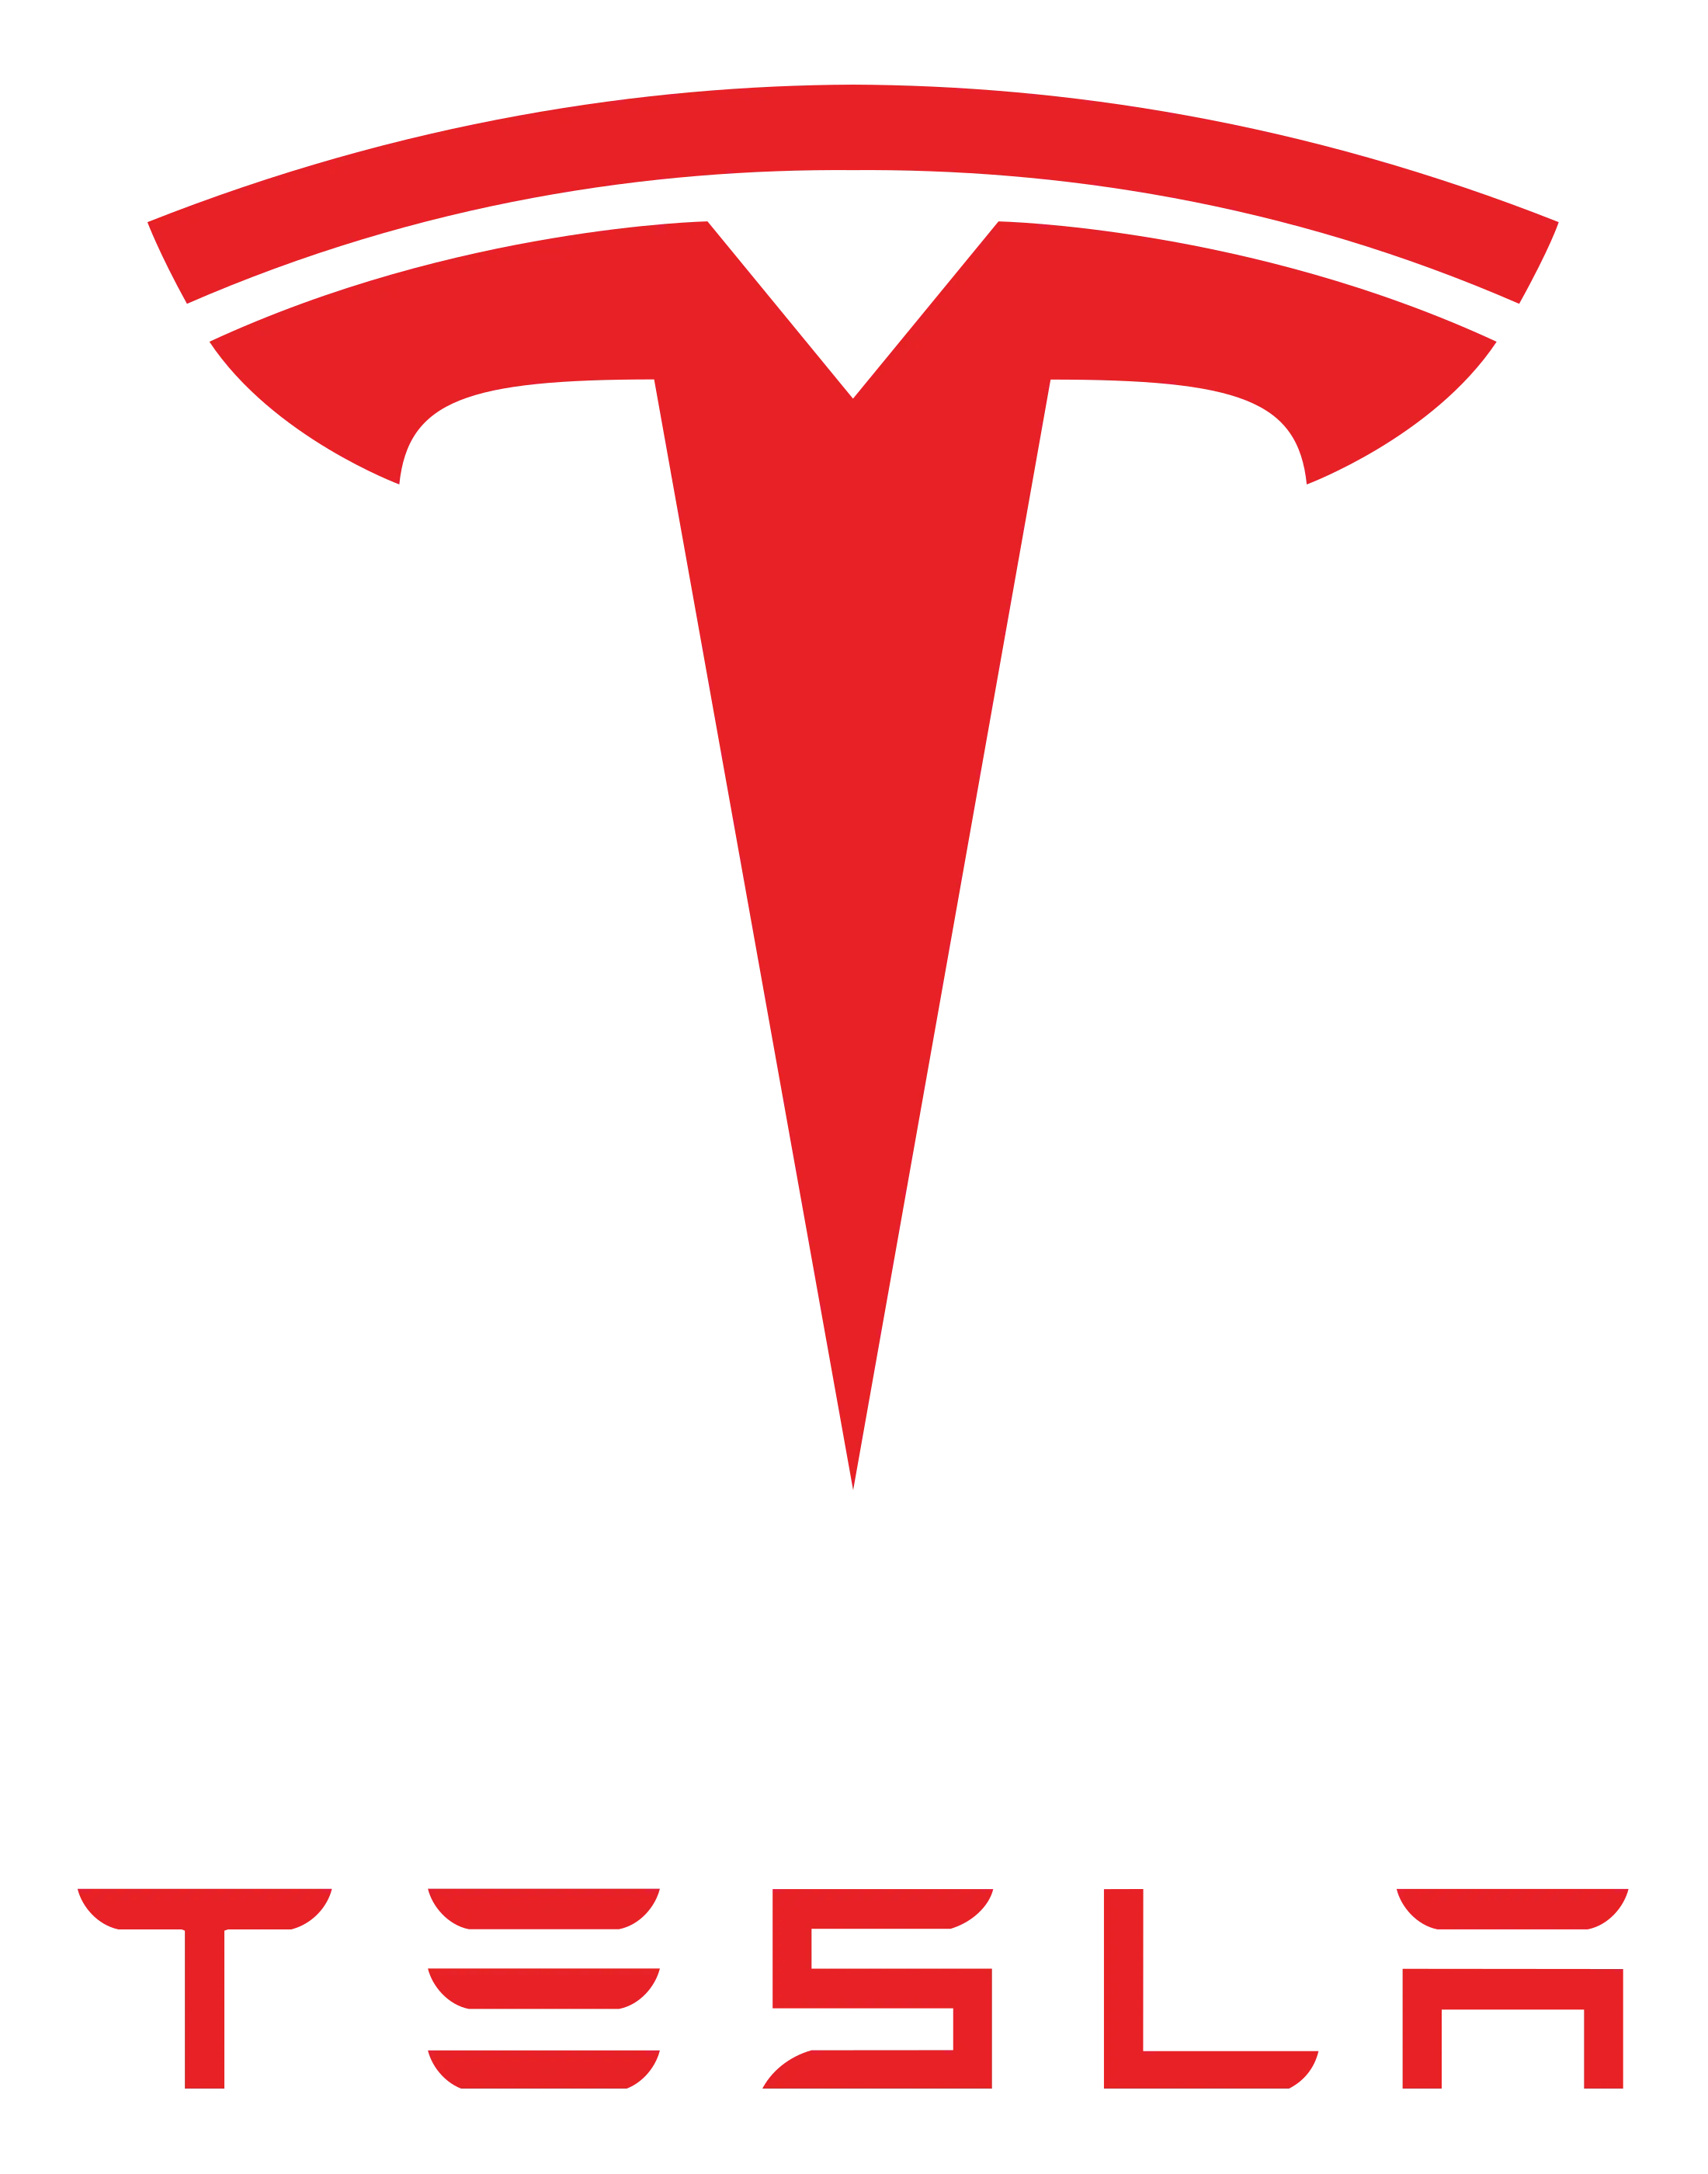 Tesla, Inc.